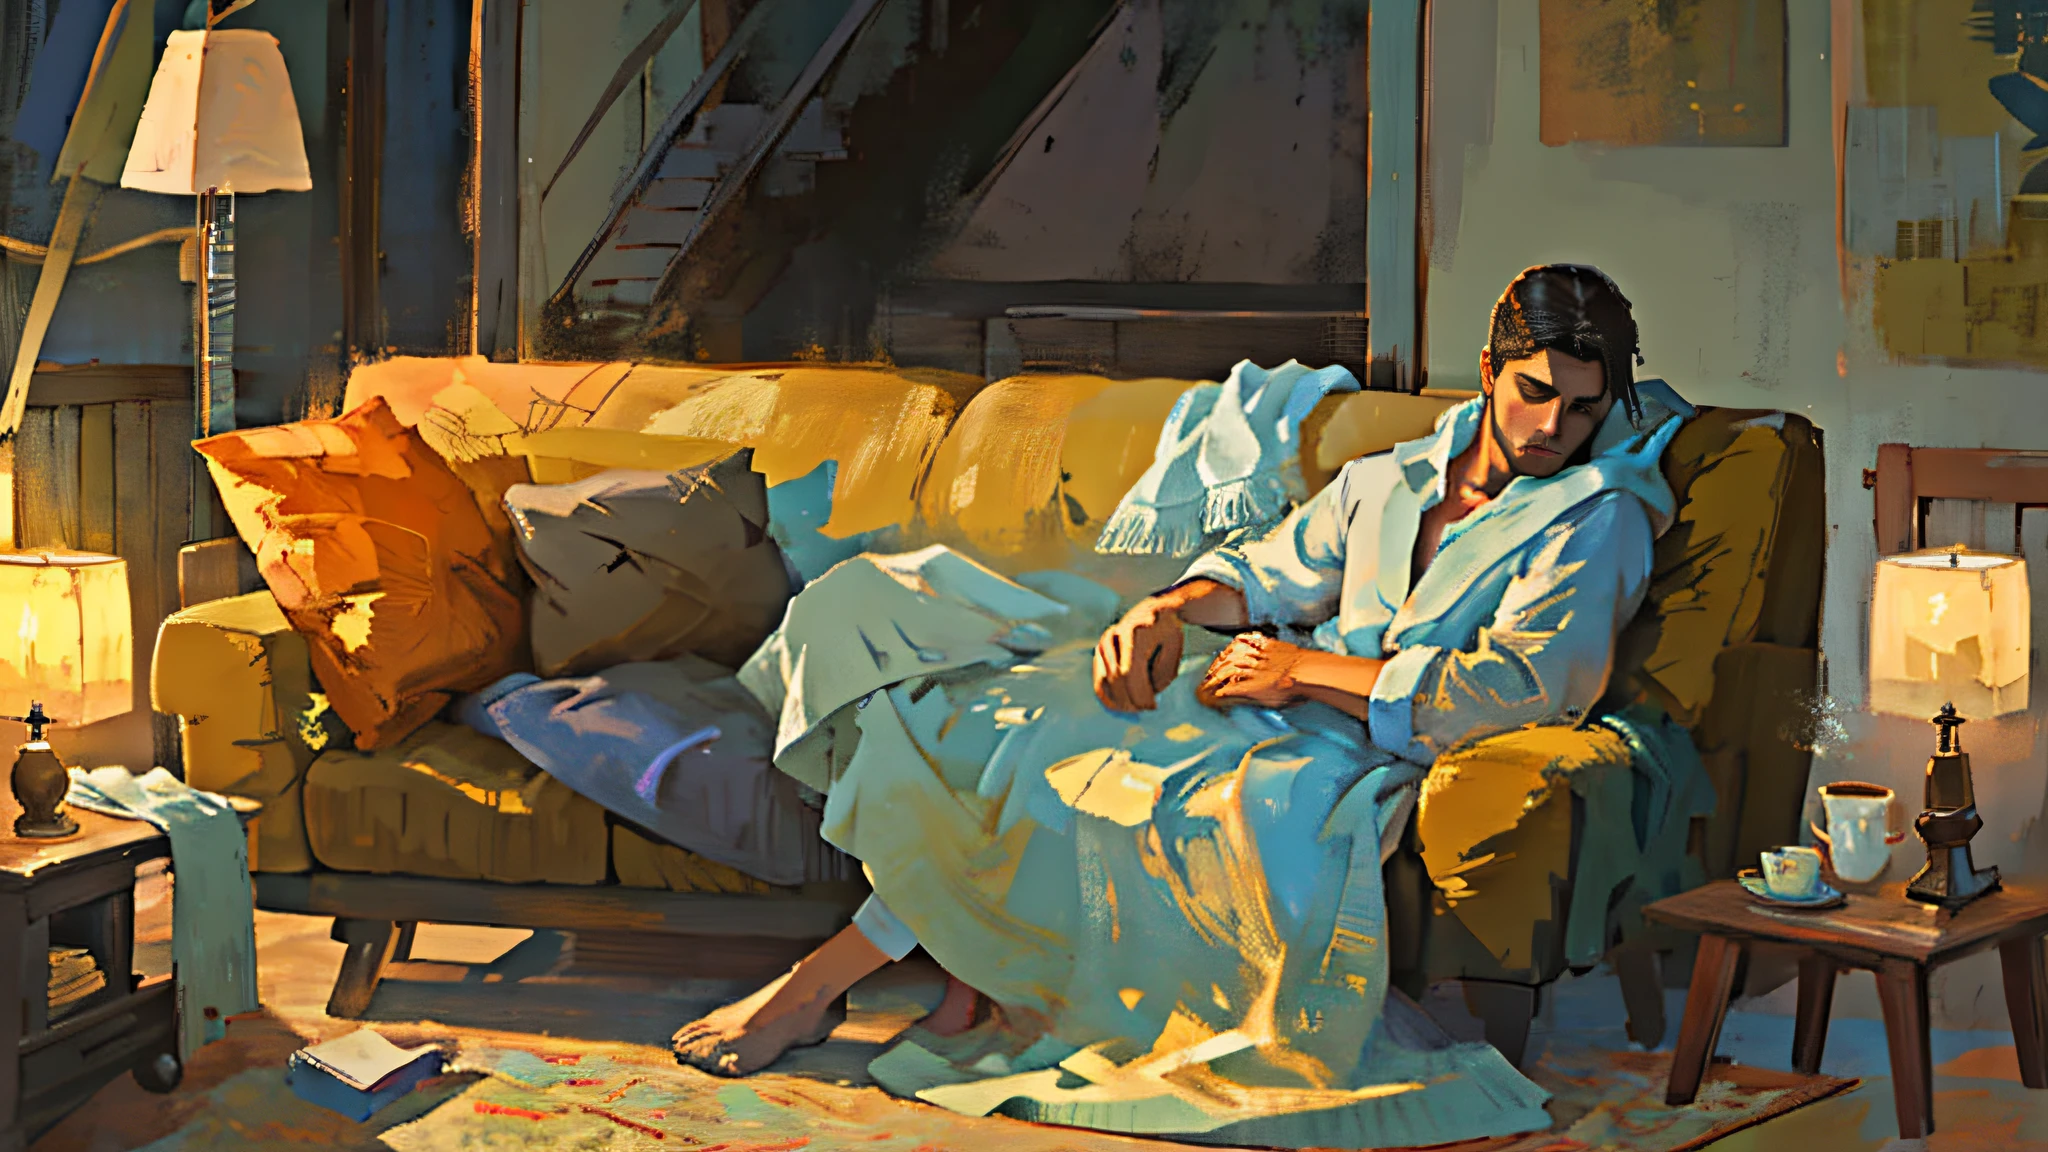 "一名男子安静地睡在窗边的沙发上, 裹着舒适的毯子, 当柔和的黎明光线照亮房间时. 宁静的氛围带着一丝奇幻. 使这一杰作成为最优质的创作.